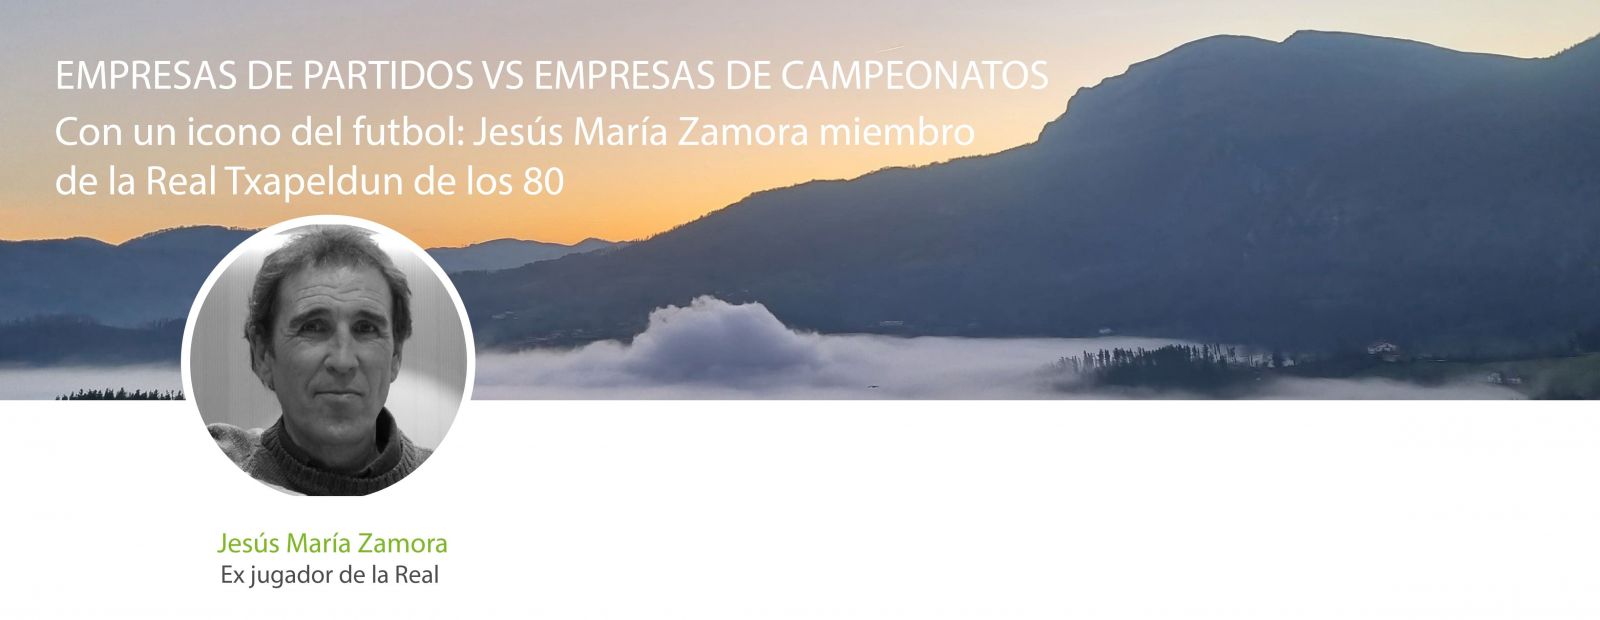 Empresas de partidos vs empresas de campeonatos con Jesús María Zamora